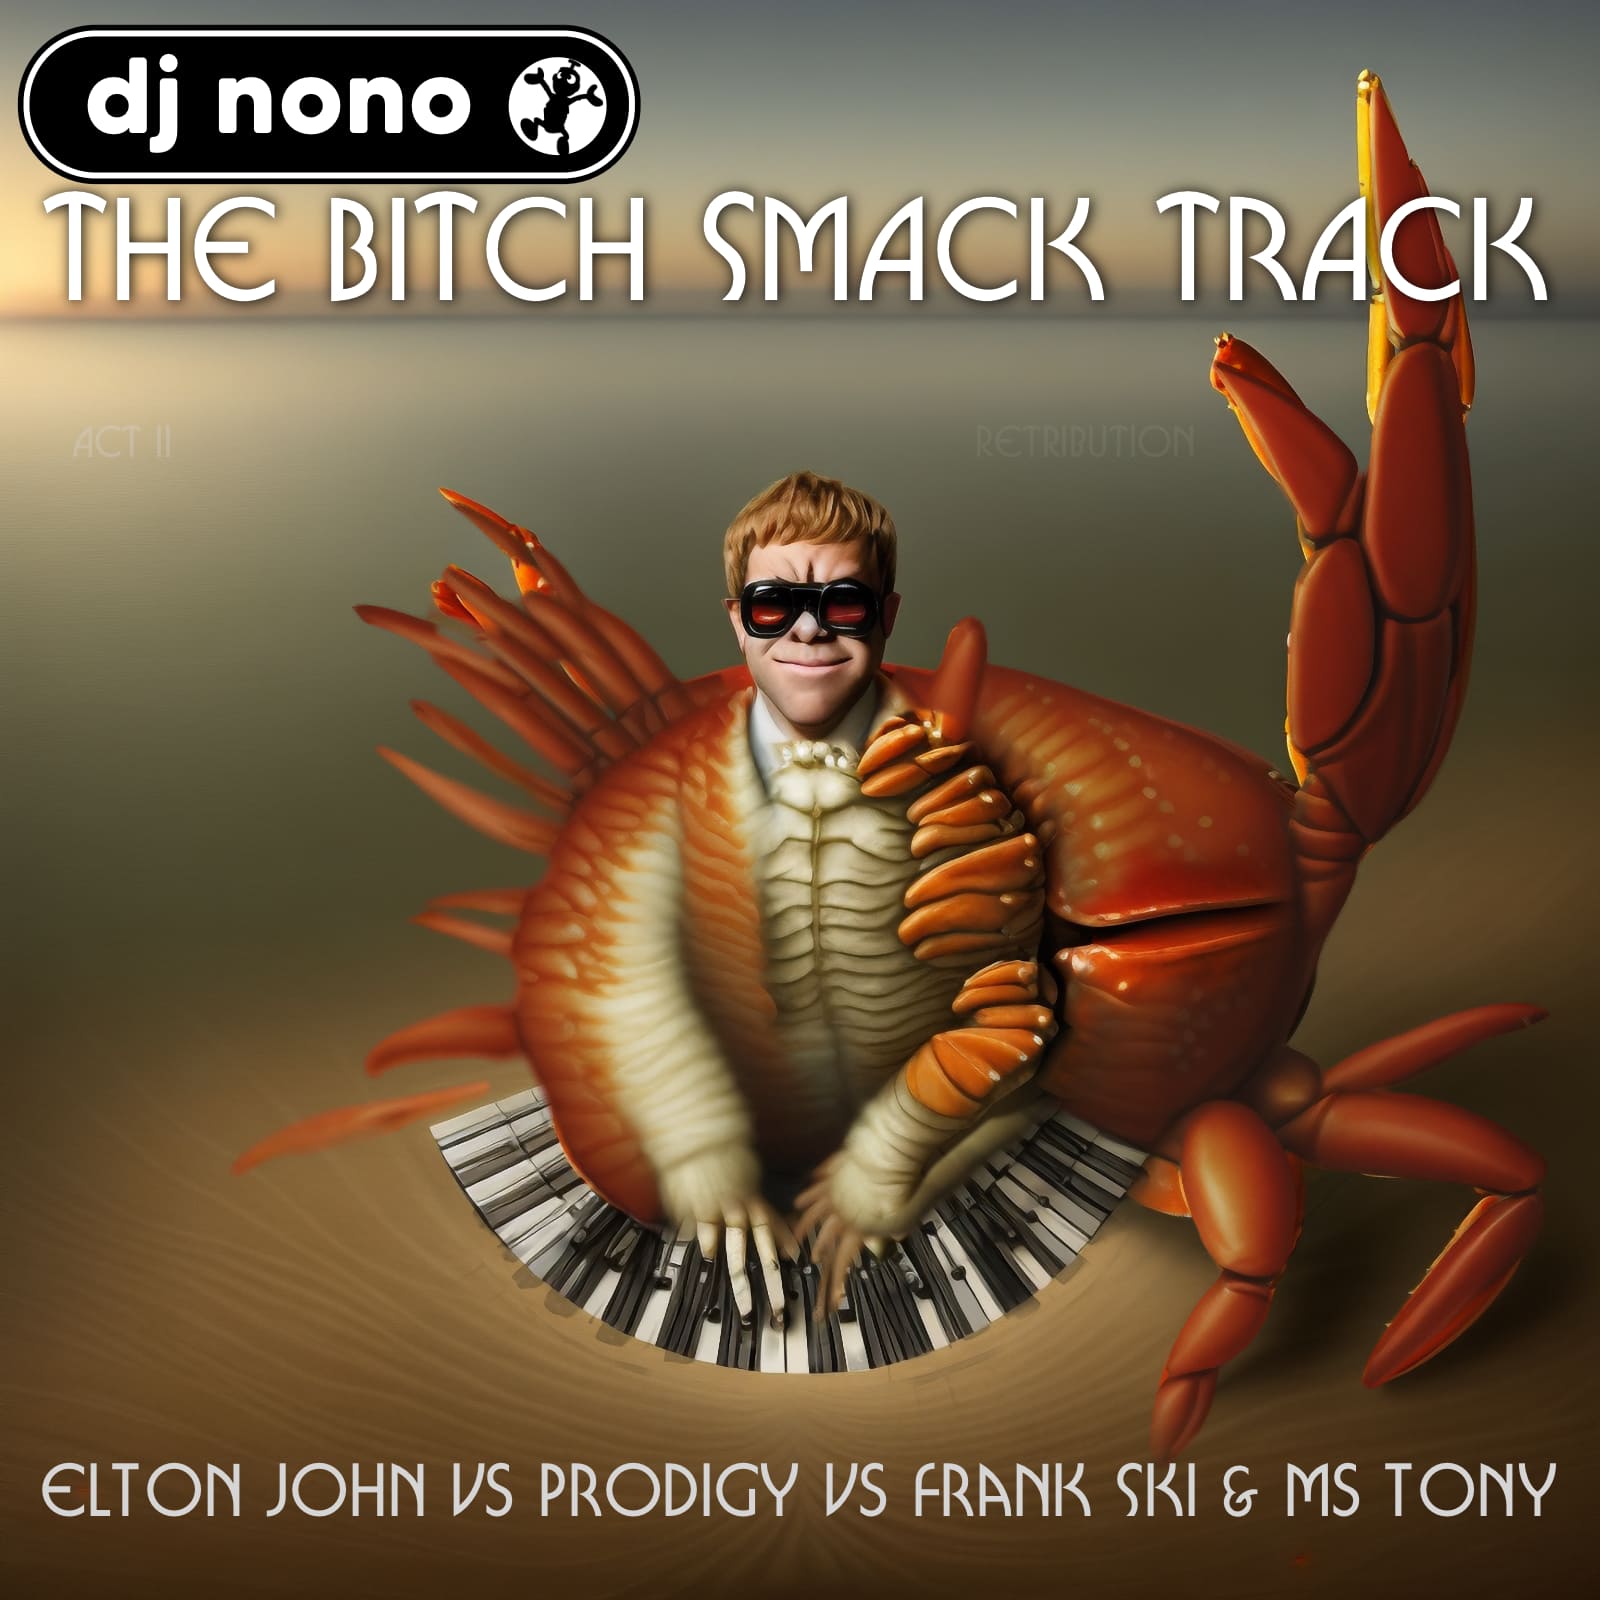 The Bitch Smack Track (Elton John vs Prodigy vs Frank Ski & Ms Tony)